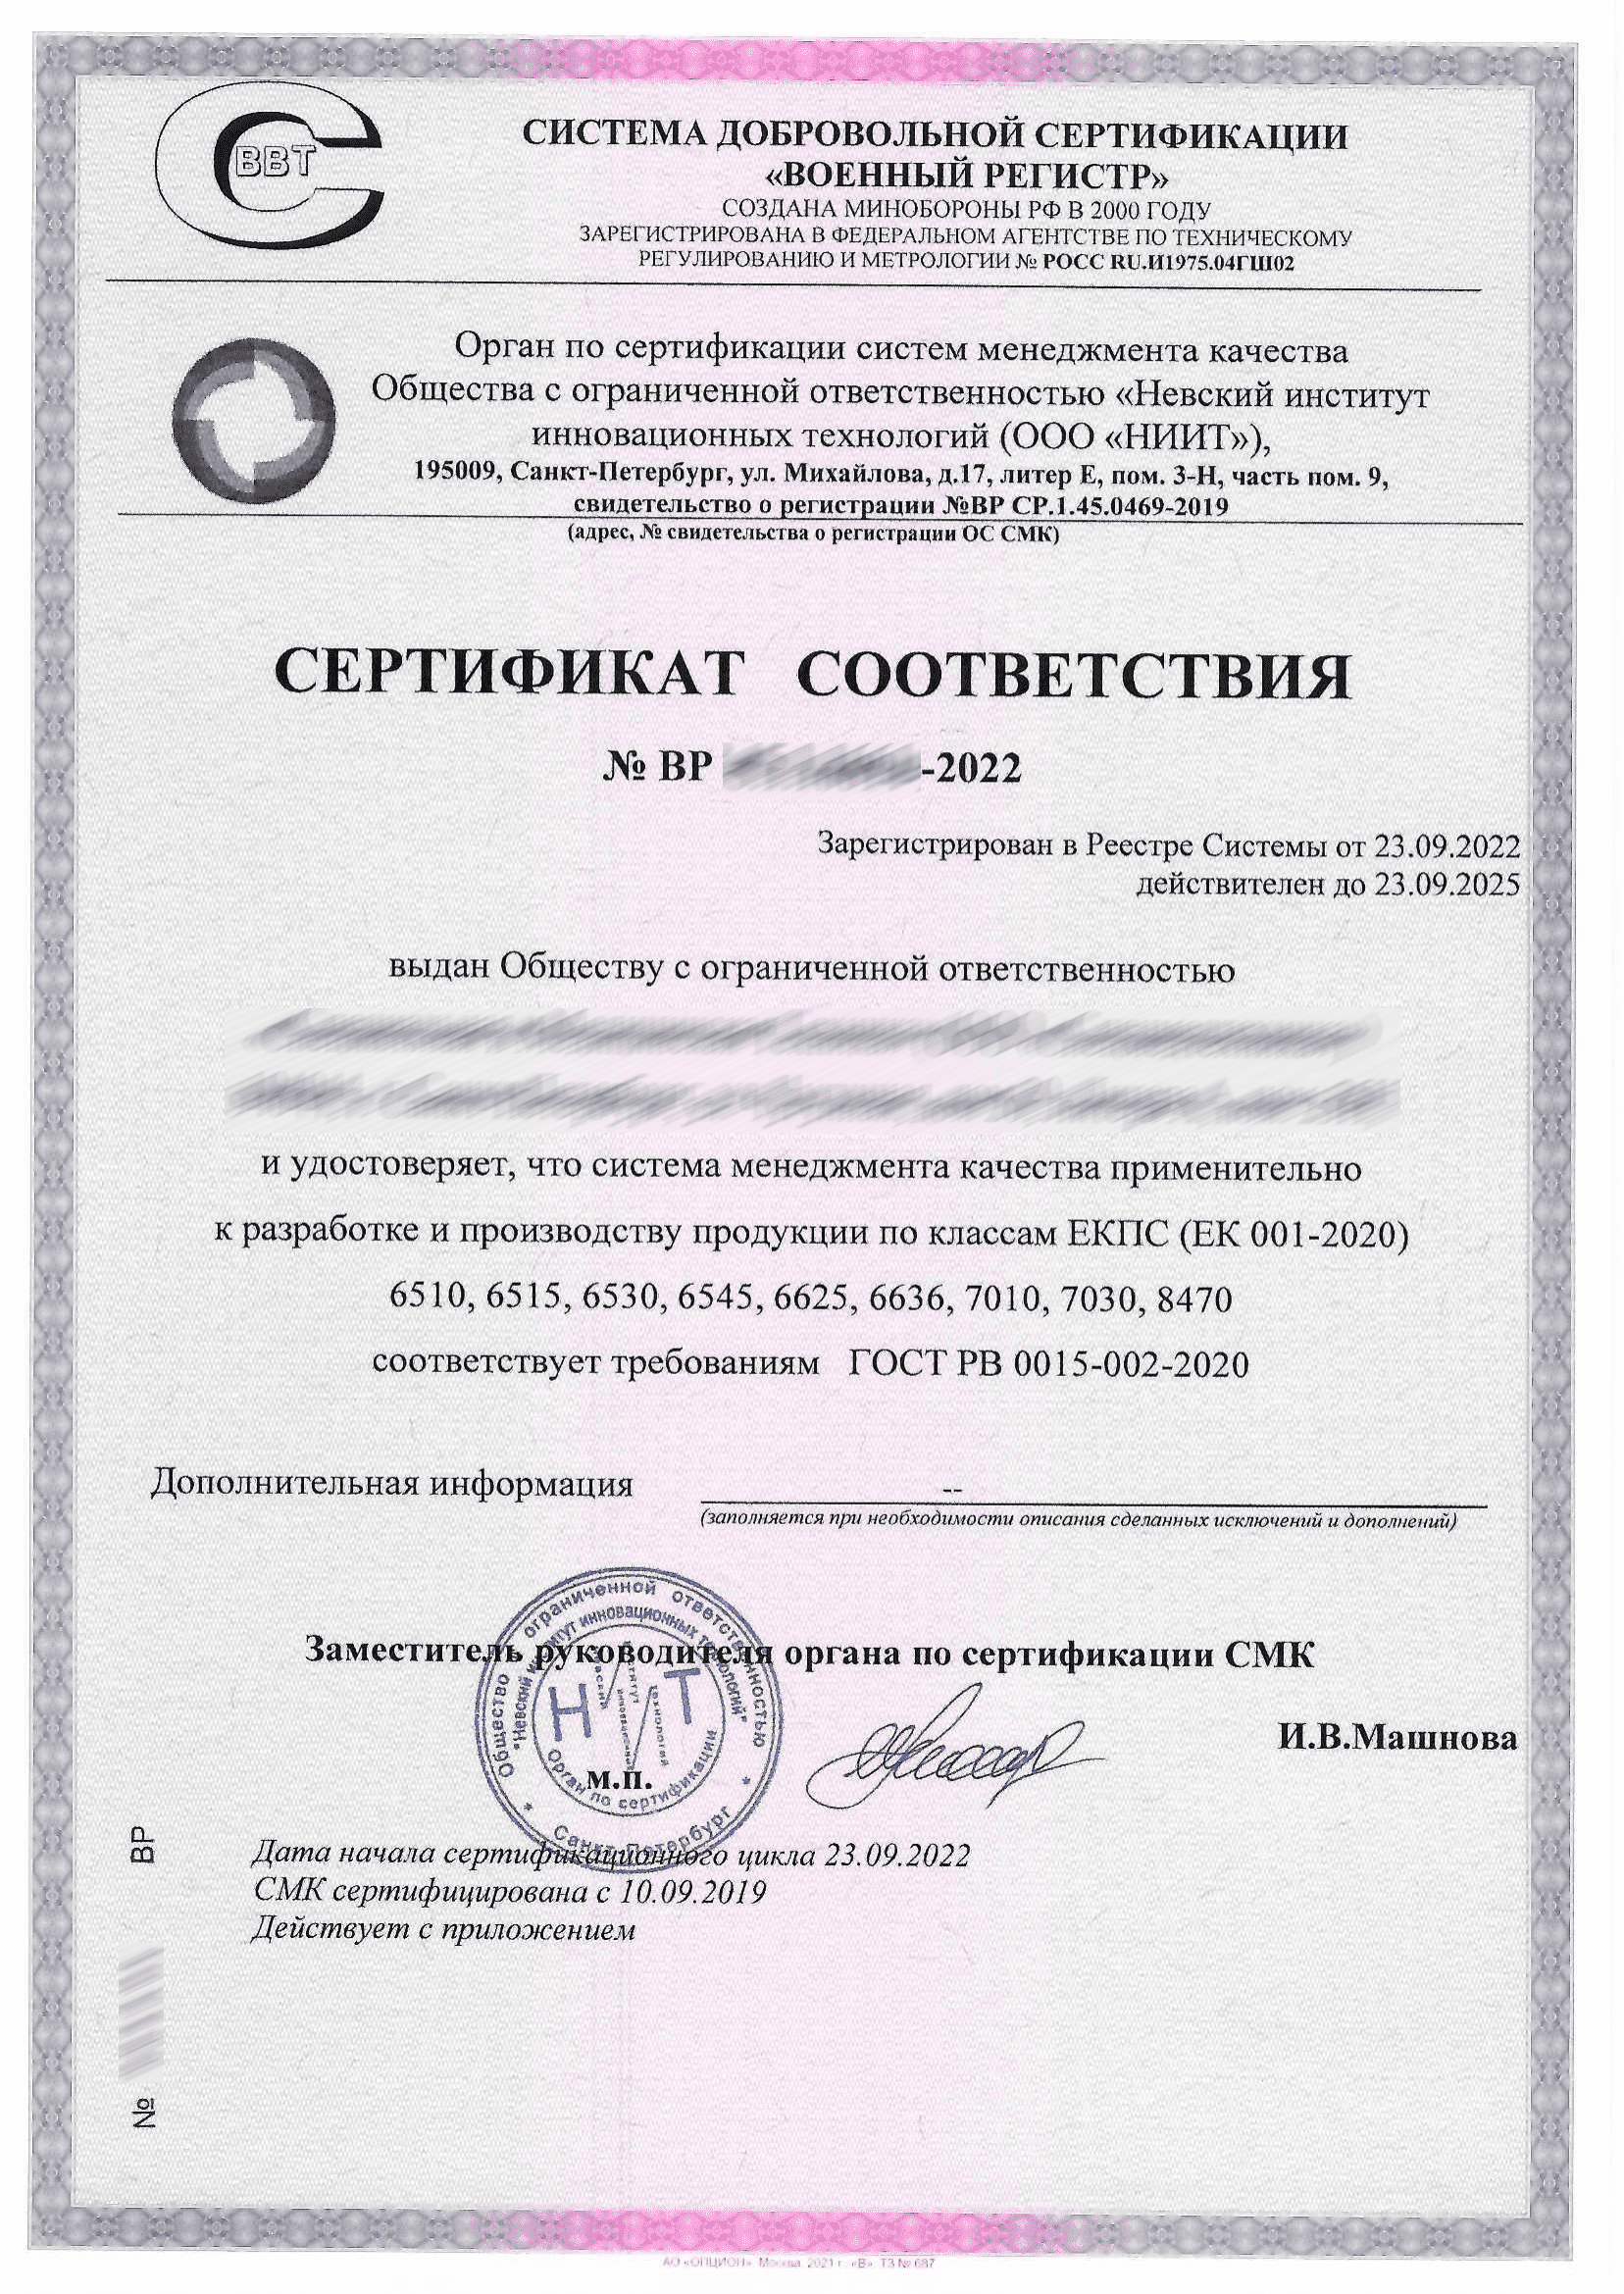 Сертификат СДС военный регистр. Смк гост рв